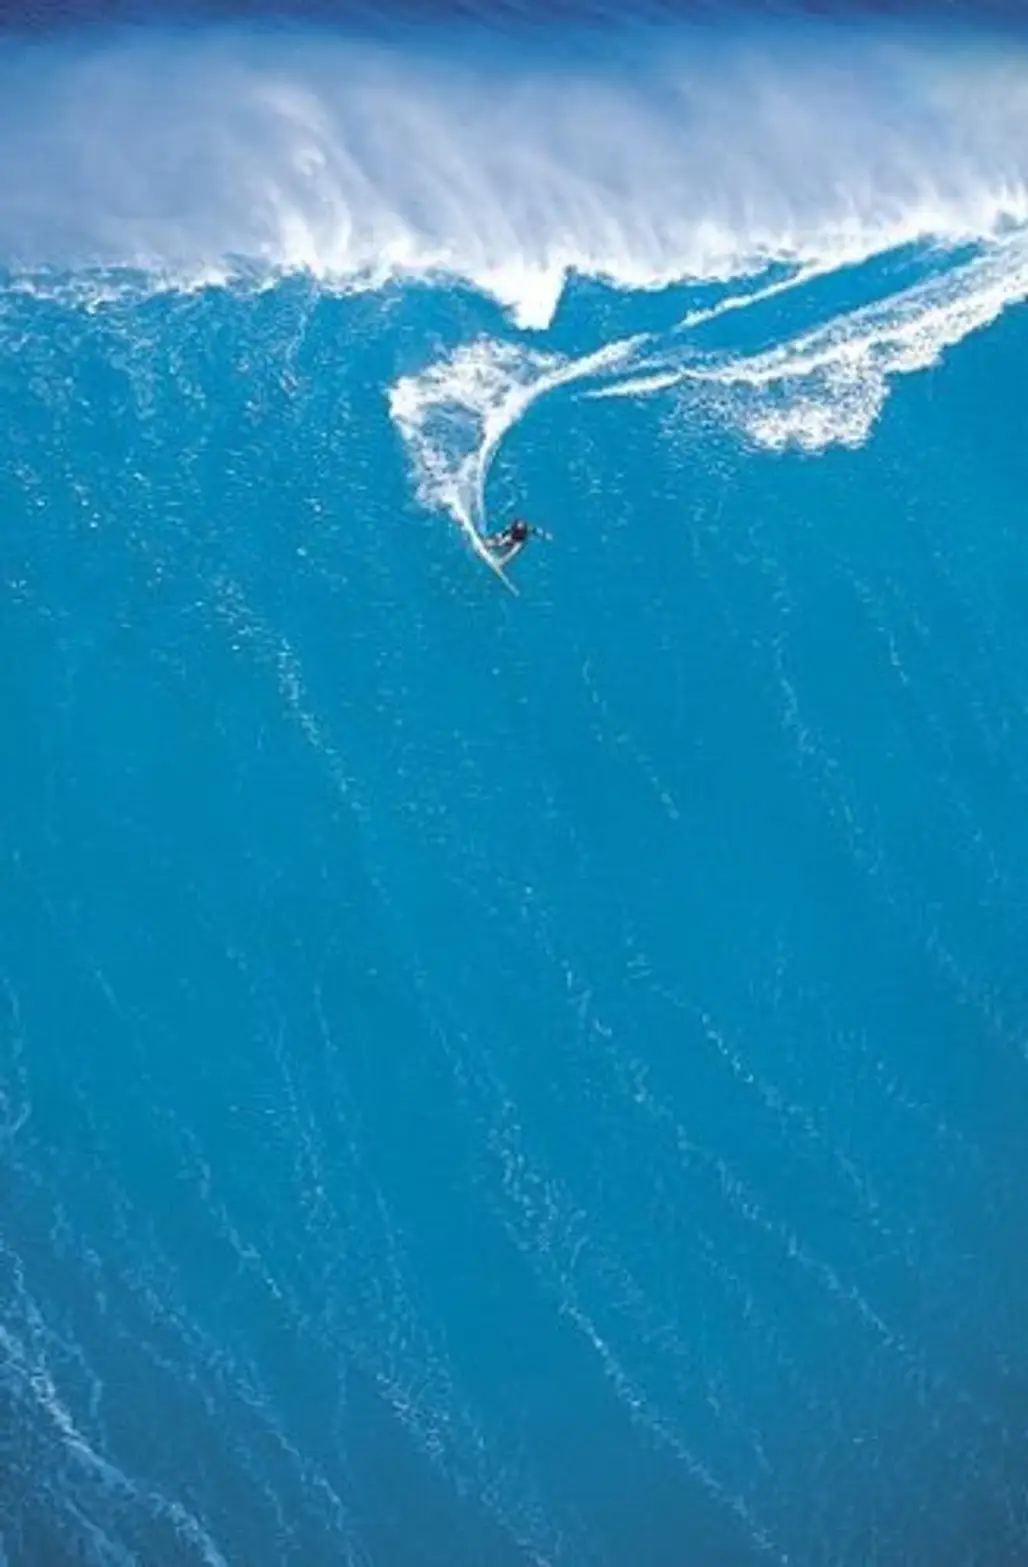 Surfing Big Waves